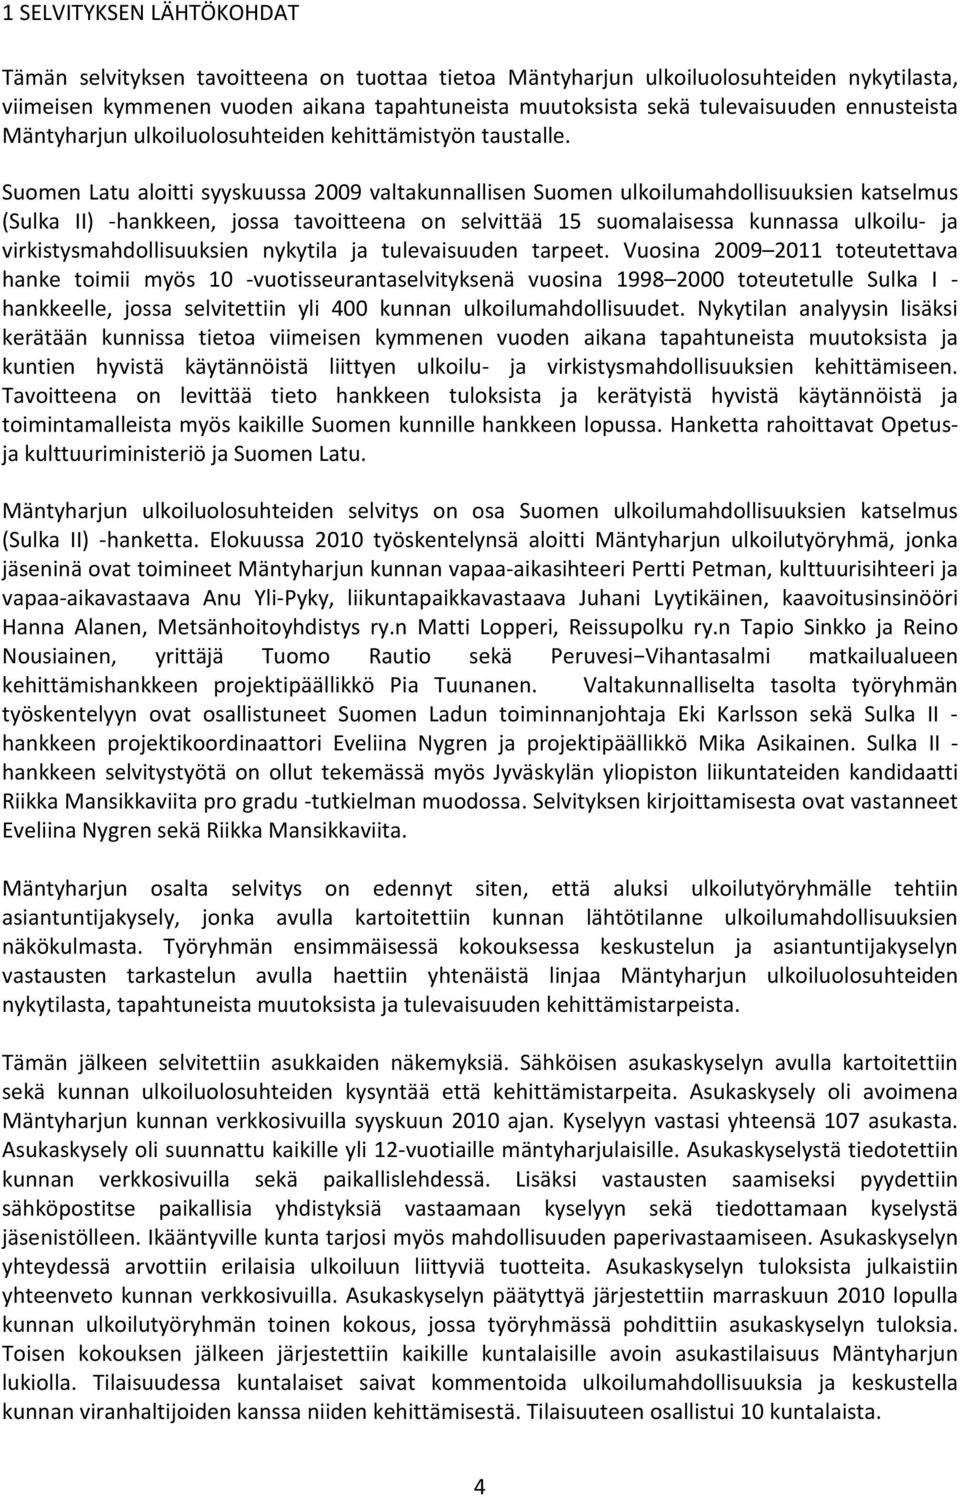 Suomen Latu aloitti syyskuussa 2009 valtakunnallisen Suomen ulkoilumahdollisuuksien katselmus (Sulka II) -hankkeen, jossa tavoitteena on selvittää 15 suomalaisessa kunnassa ulkoilu- ja